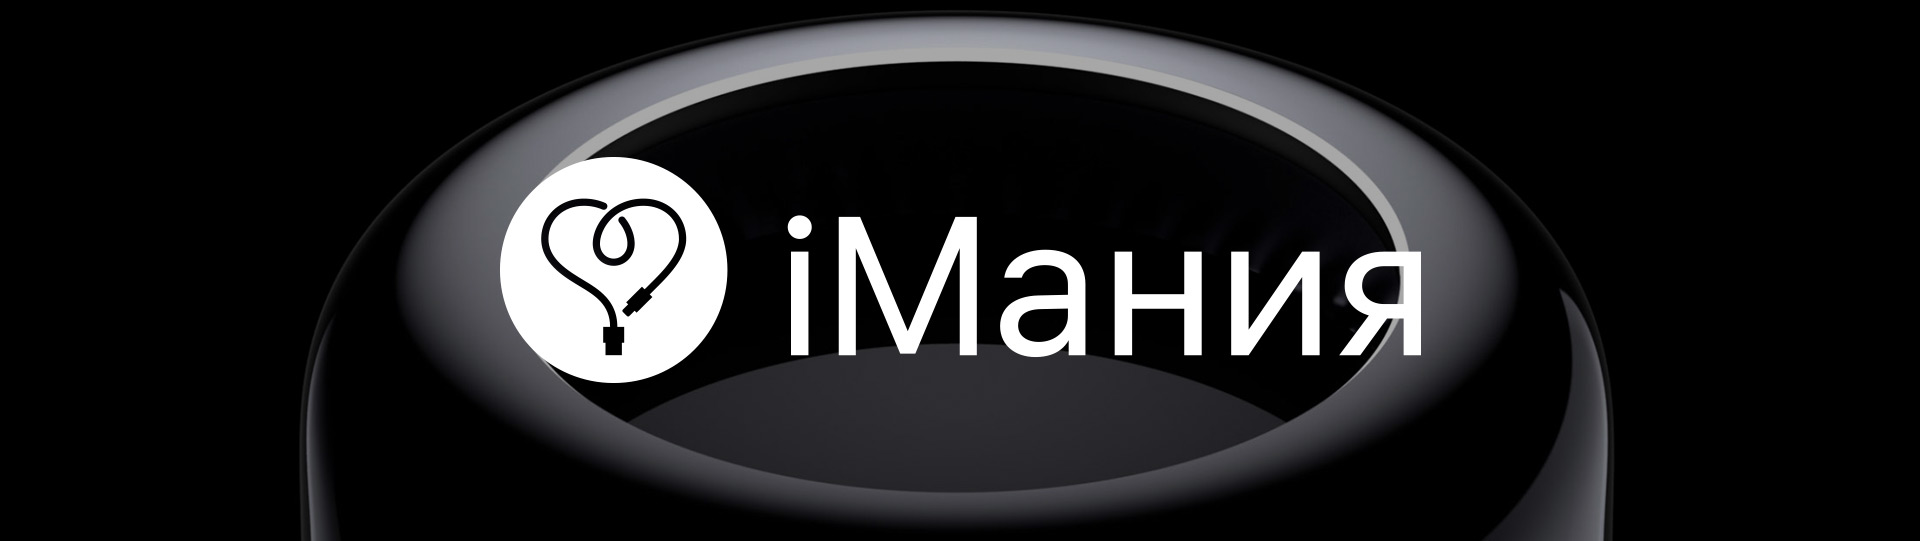 Создание логотипа для магазины техники iMania